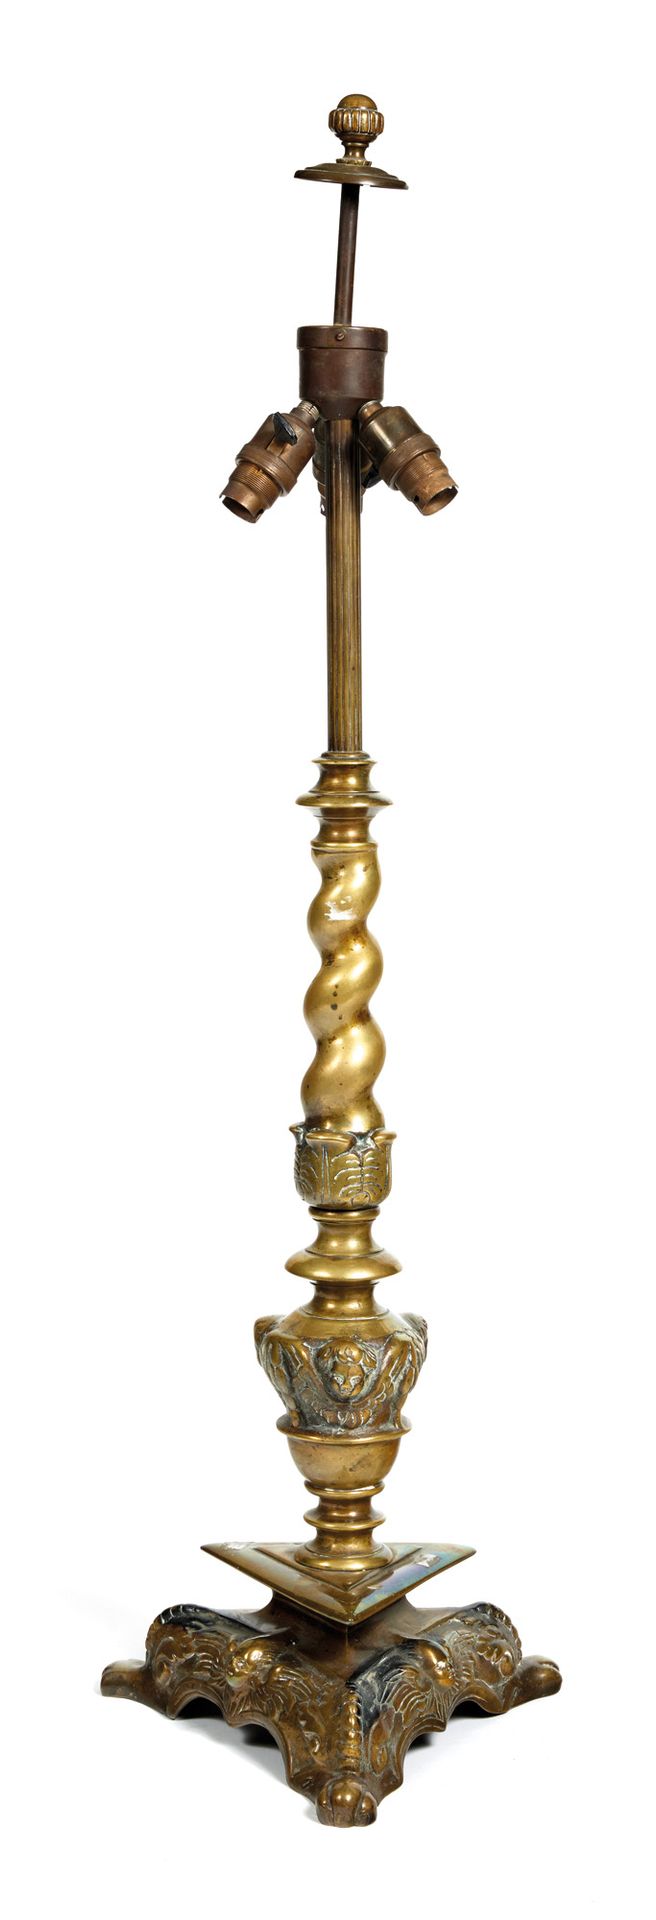 Pique-cierge Pedestal de bronce dorado

en bronce dorado, columna de torso y bas&hellip;